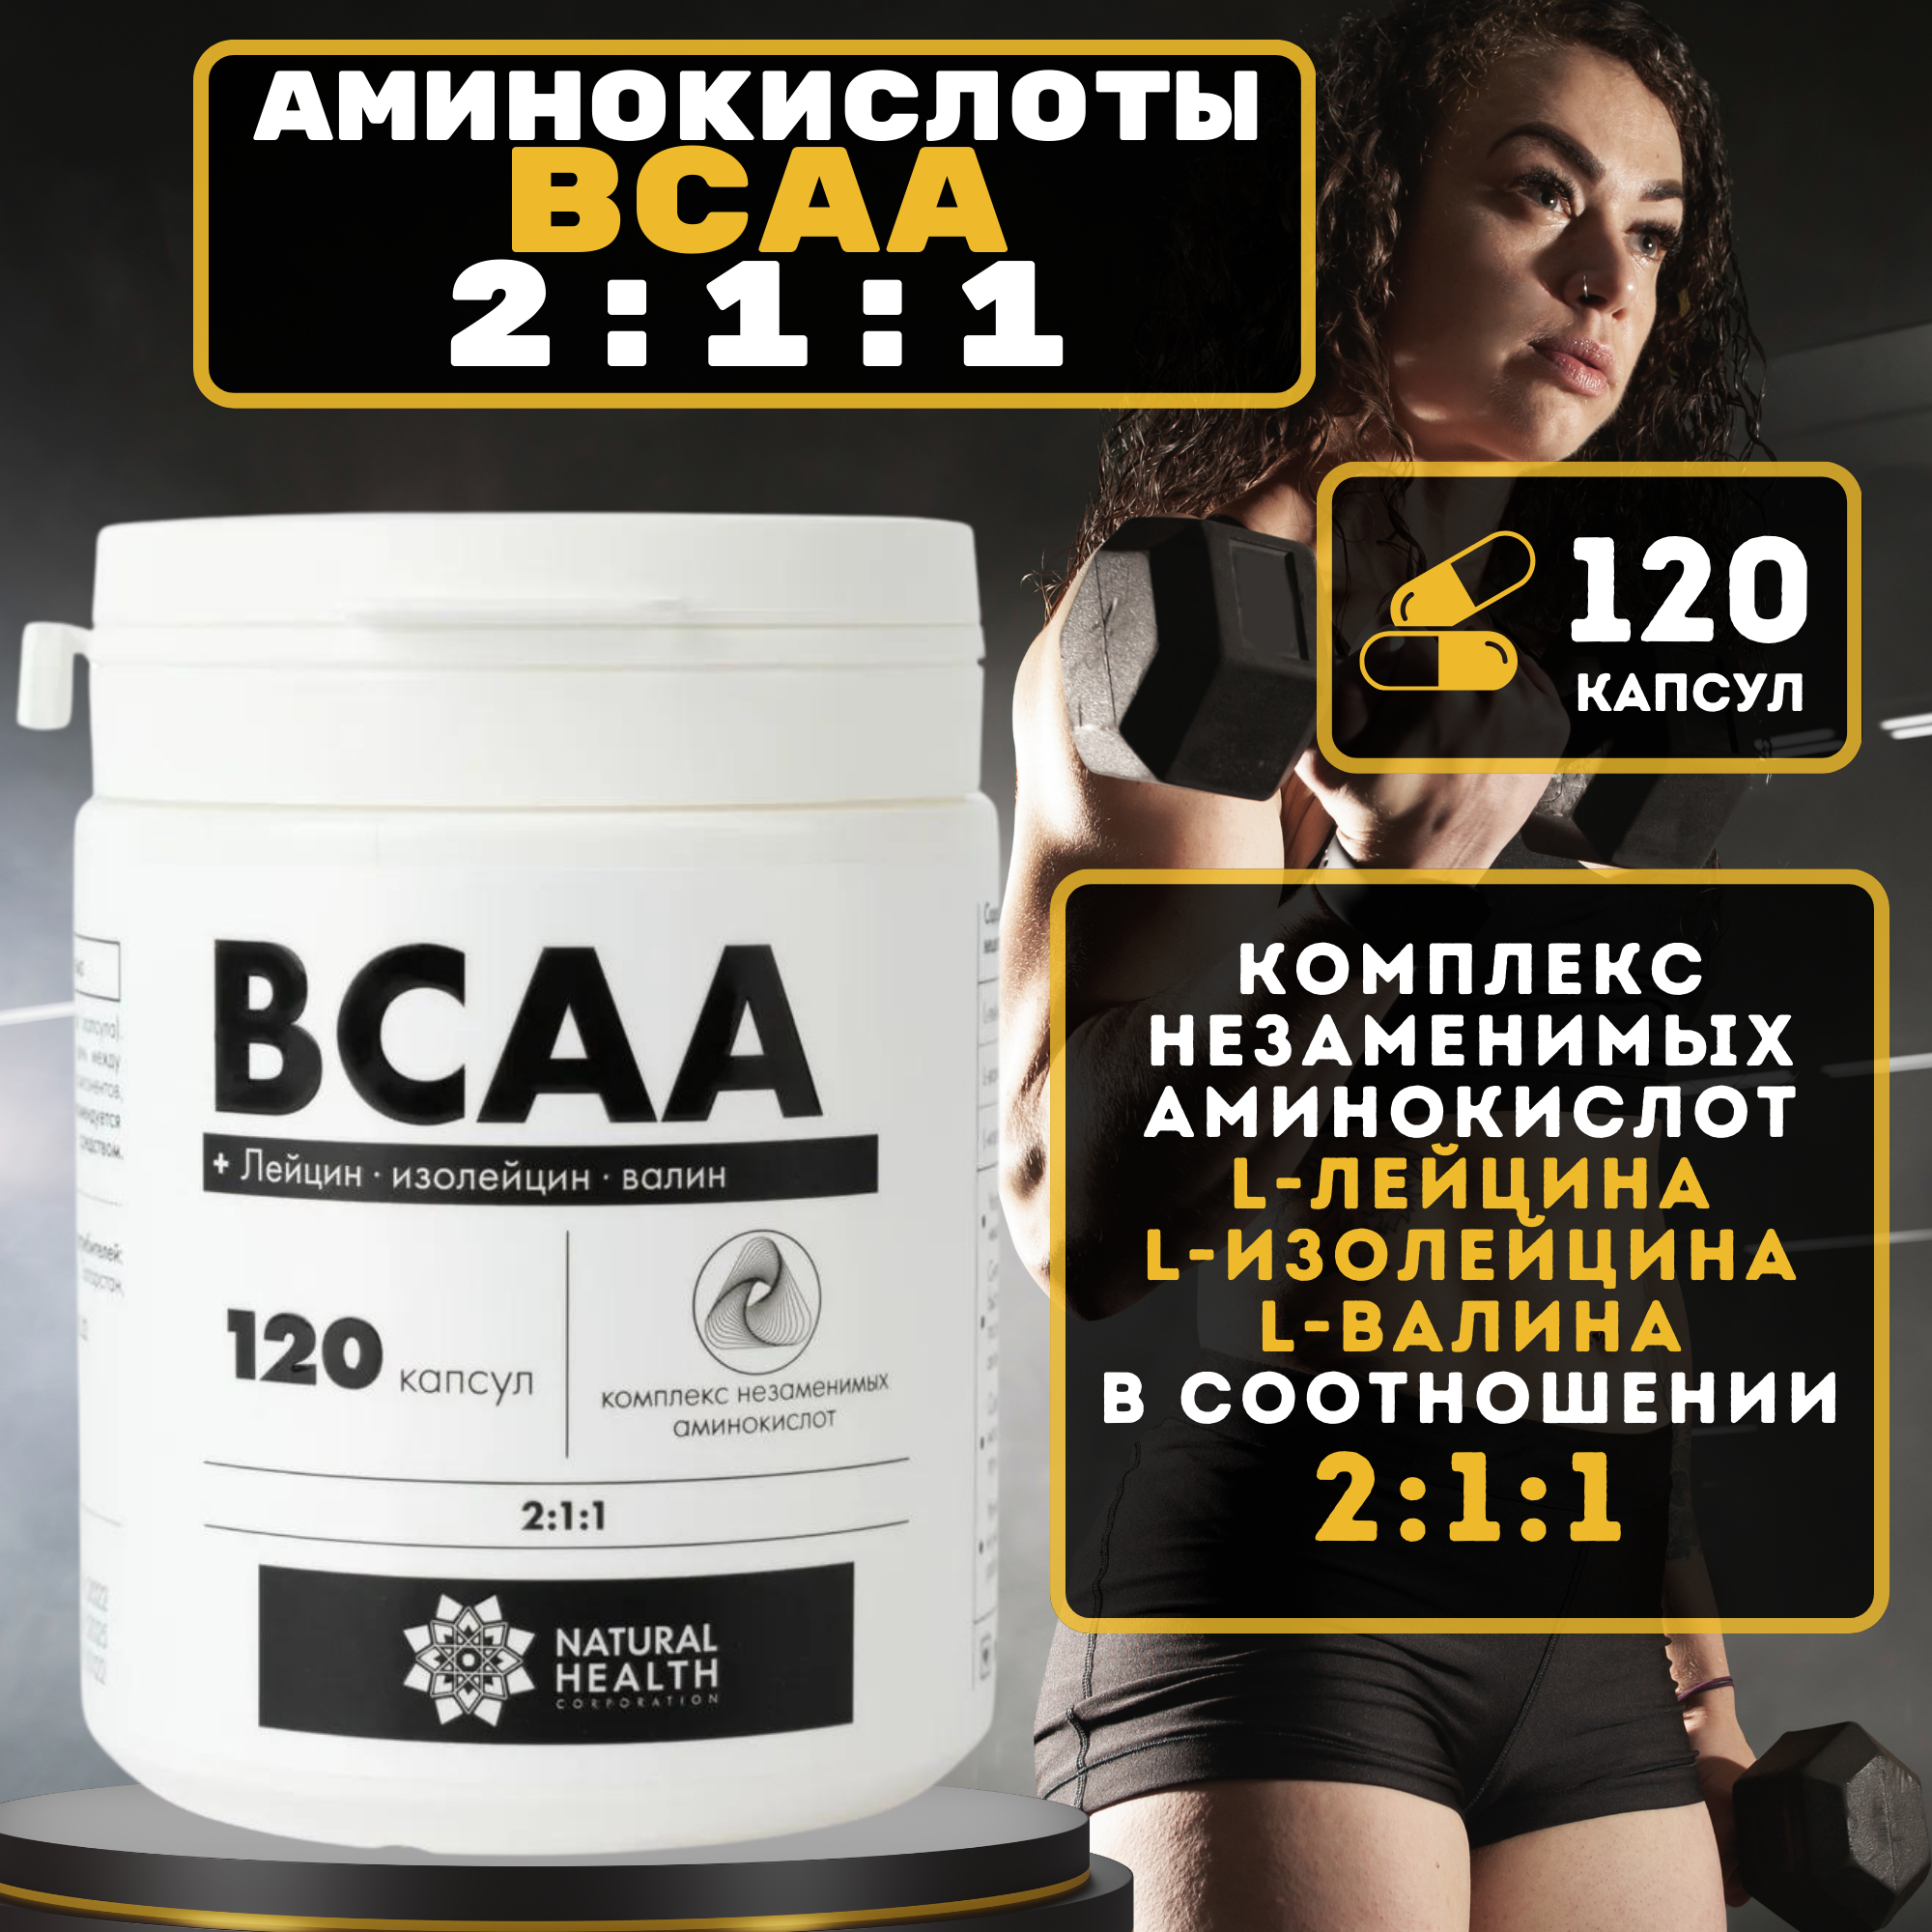 Аминокислоты BCAA 2:1:1 / БЦАА, 120 капсул. Спортивное питание для мужчин и женщин, витамины для мышц и мужского здоровья. Natural Health / Натуральное здоровье